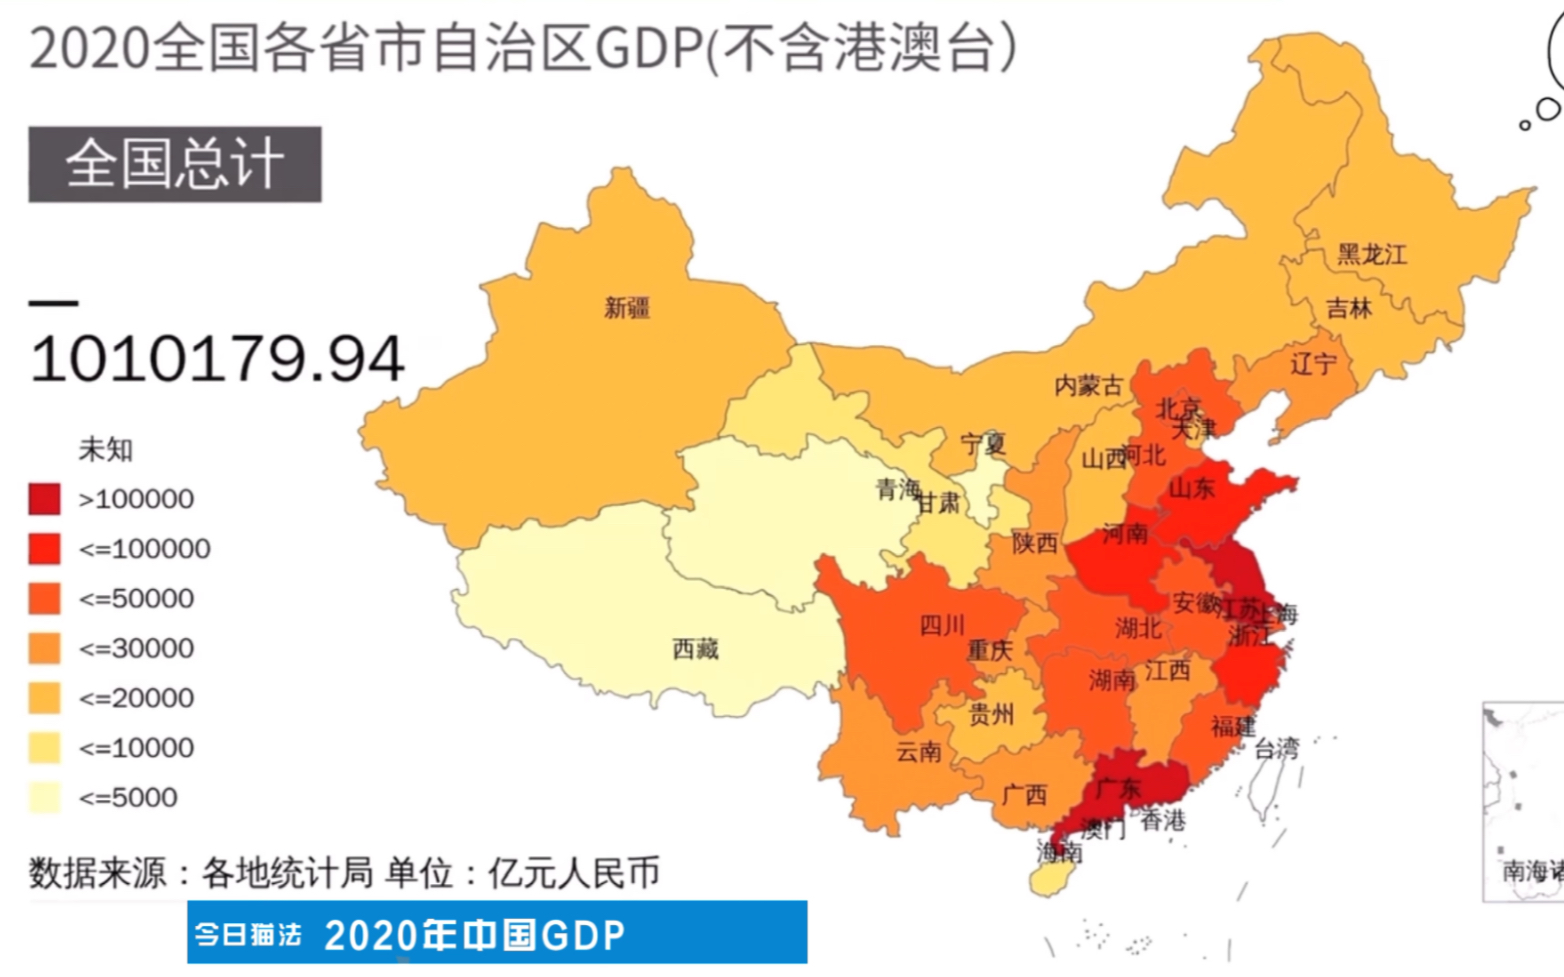 2020年中国gdp中国大陆各省gdp排名